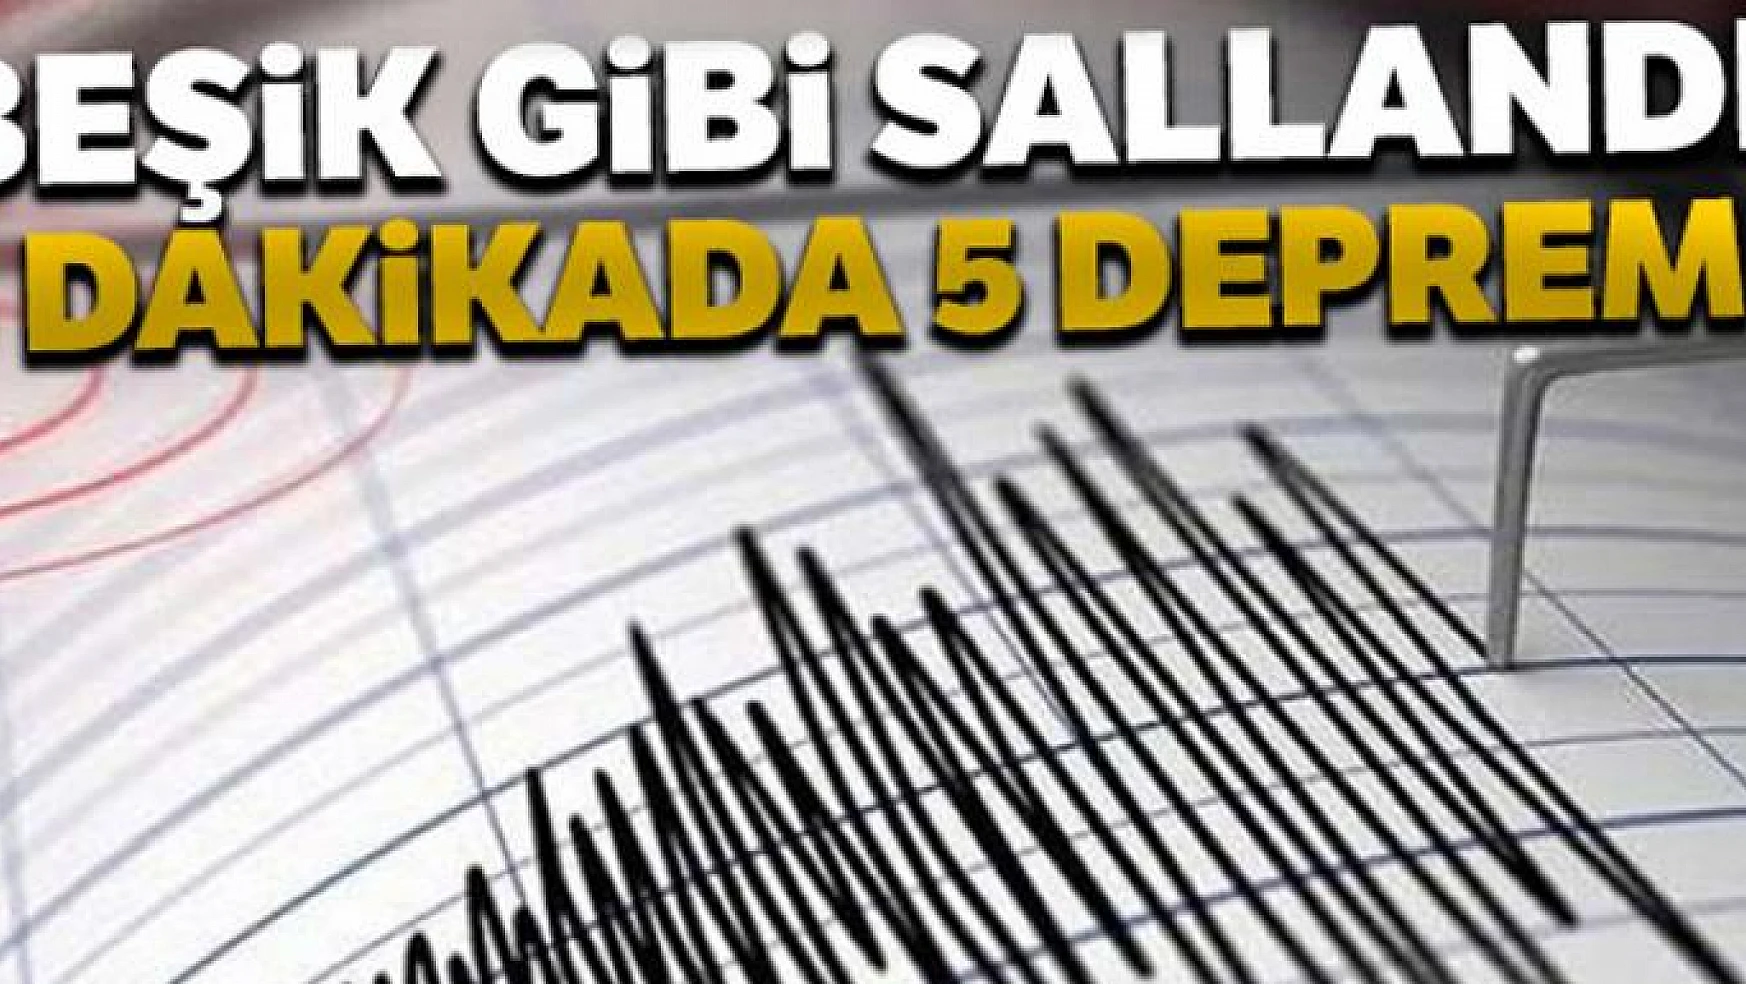 Manisa'da 5 dakikada 5 deprem meydana geldi